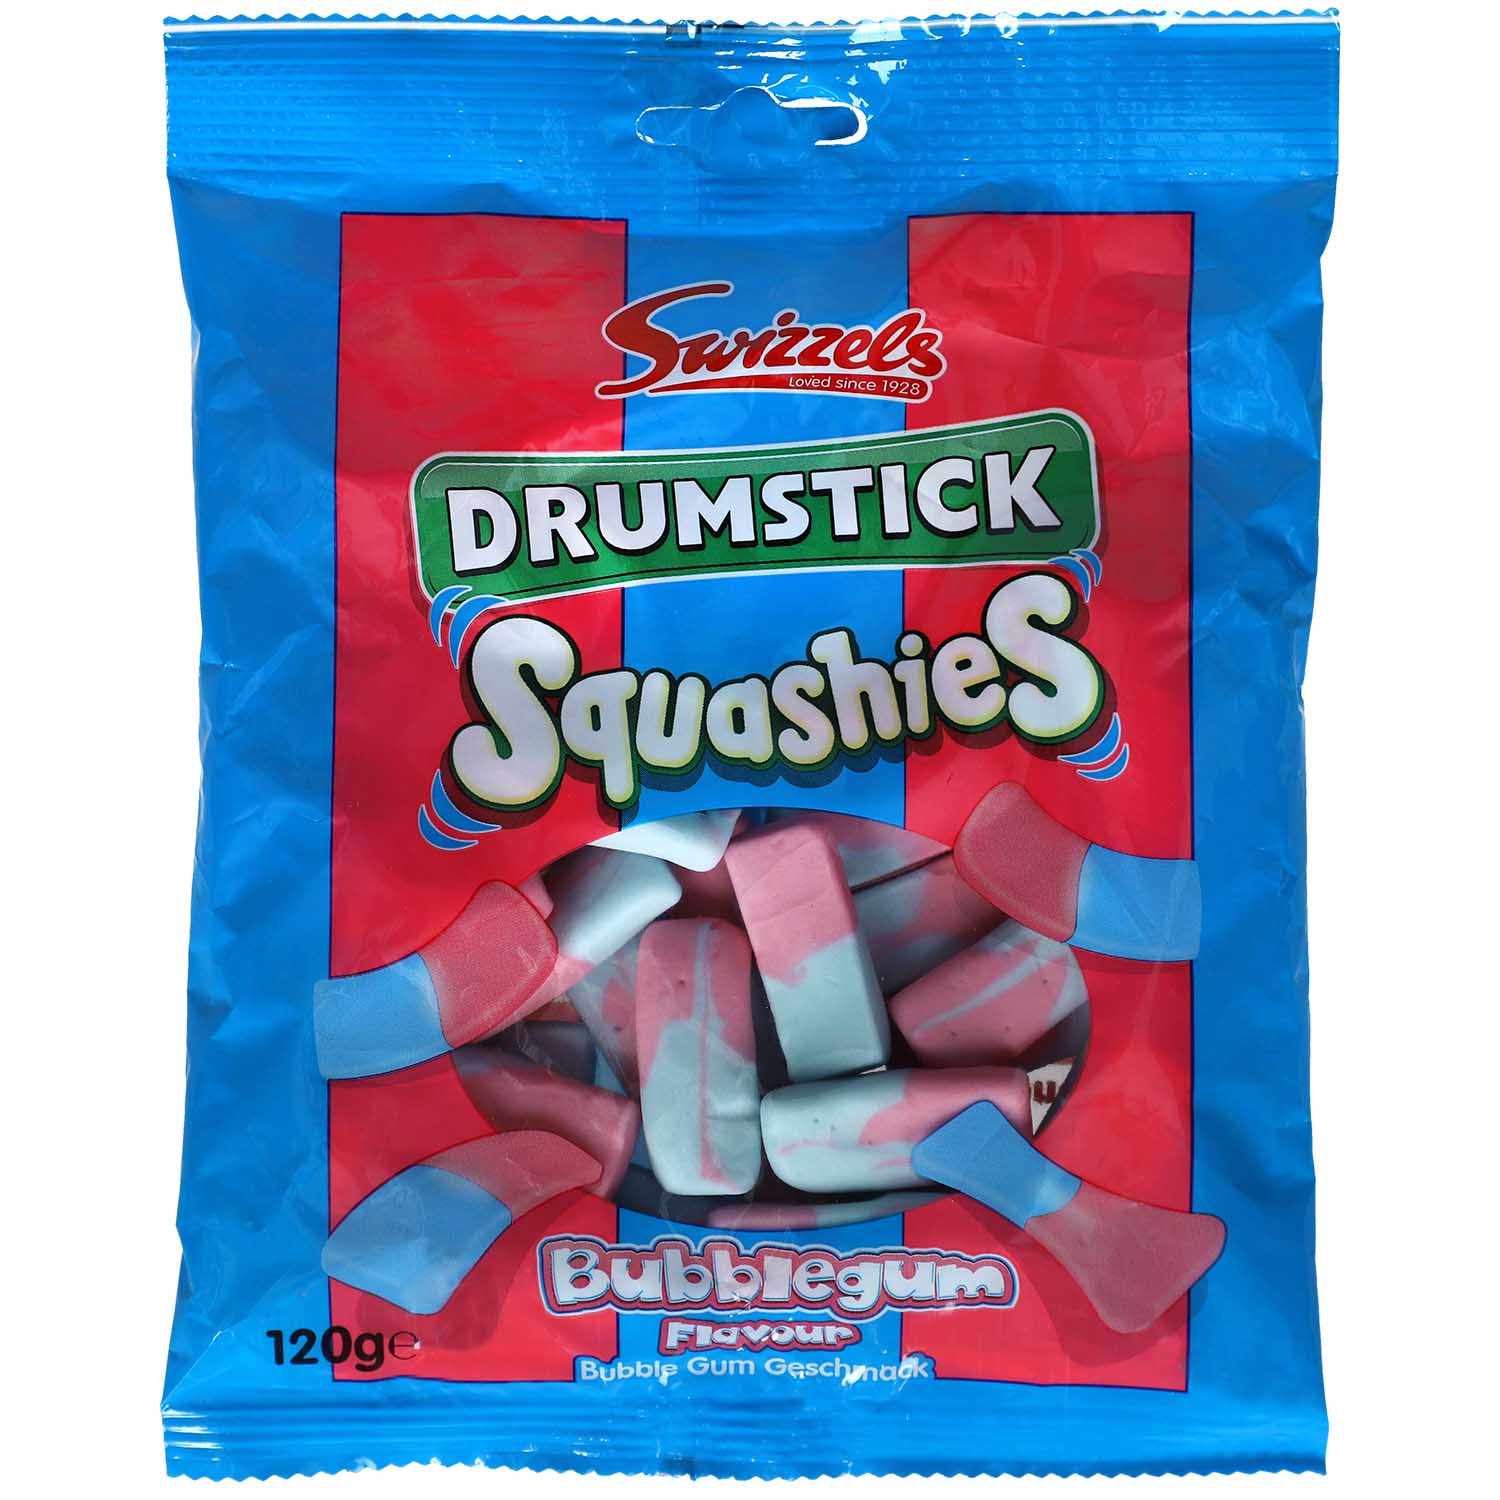 Sie können zum niedrigsten Preis kaufen! Swizzels Drumstick Squashies Bubblegum Sweets Online im Shop of | World kaufen 120g